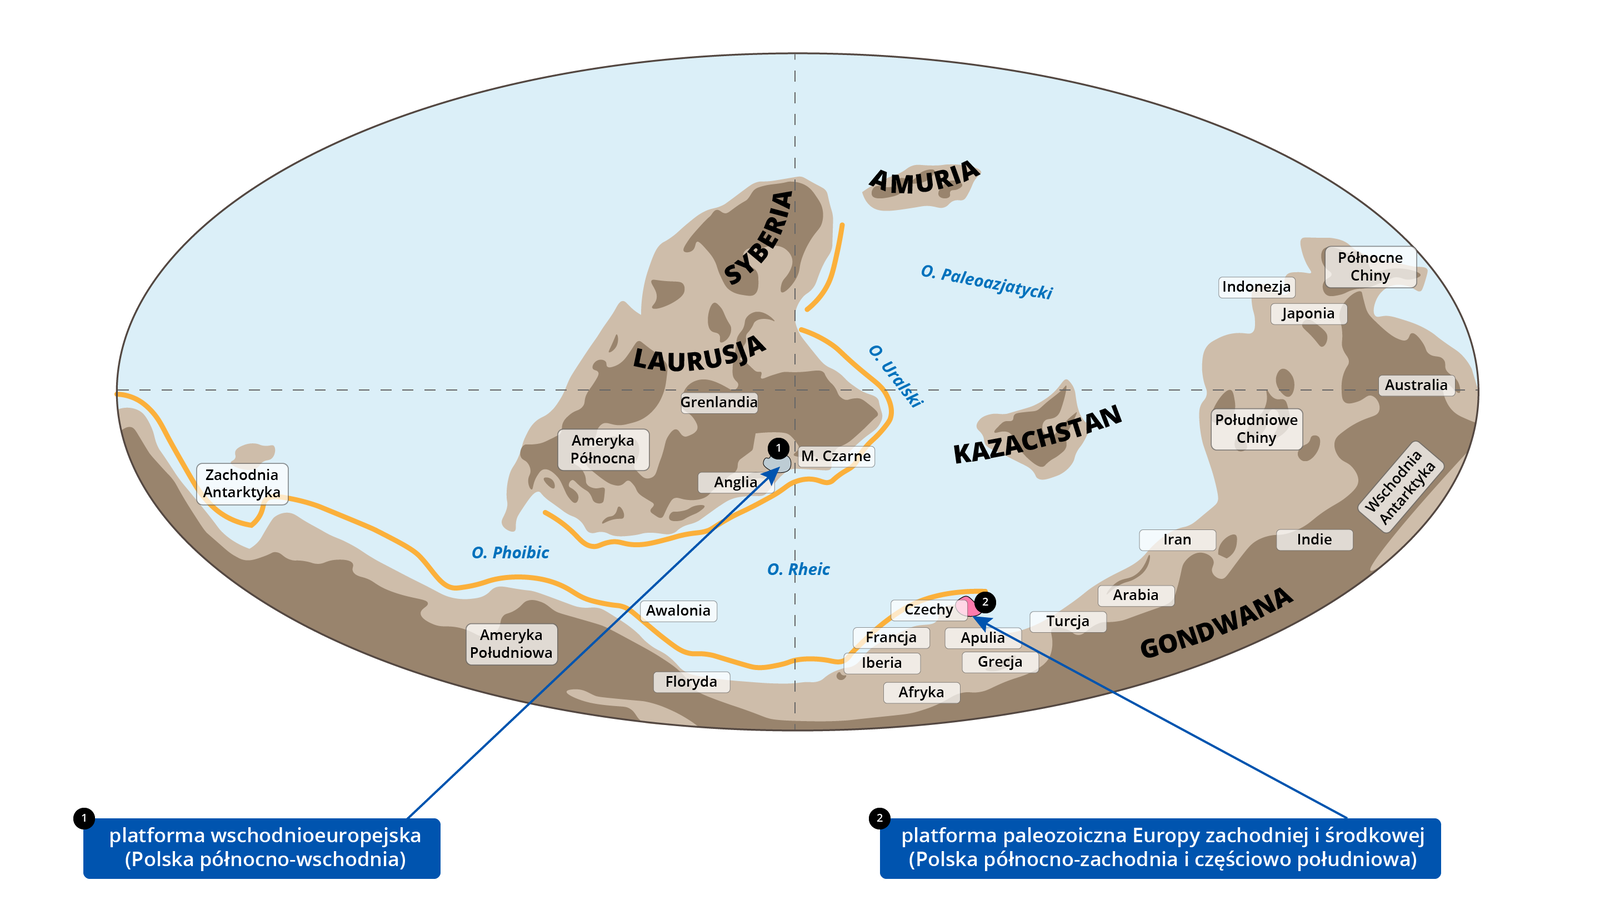 Ilustracja przedstawia owalną mapę świata prezentującą ewolucję Karpat w sylurze. Dolną część mapy zajmuje Gondwana. Na masę lądową Gondwany składały się dzisiejsze: Ameryka Południowa, Afryka, Indie, Australia, Antarktyda i południowo-wschodnia część Azji oraz mniejsze mikrokontynenty, jak Zelandia i Madagaskar. Powyżej Gondwany jest Laurusja połączona z Syberią. Składają się na nią Ameryka Północna, Grenlandia, Anglia, Morze Czarne. Na wschód od Laurusji i Syberii leży Kazachstan – odrębny ląd. Natomiast po prawej stronie północnej części Syberii leży Amuria. W południowo-wschodniej części Laurusji, pomiędzy Anglią a Morzem Czarnym, zaznaczono platformę wschodnioeuropejską (Polska północno-wschodnia). Powyżej Apulii, praktycznie na styku z Gondwaną, wyróżniono platformę paleozoiczną Europy zachodniej i środkowej (Polska północno-wschodnia i częściowo południowa). 